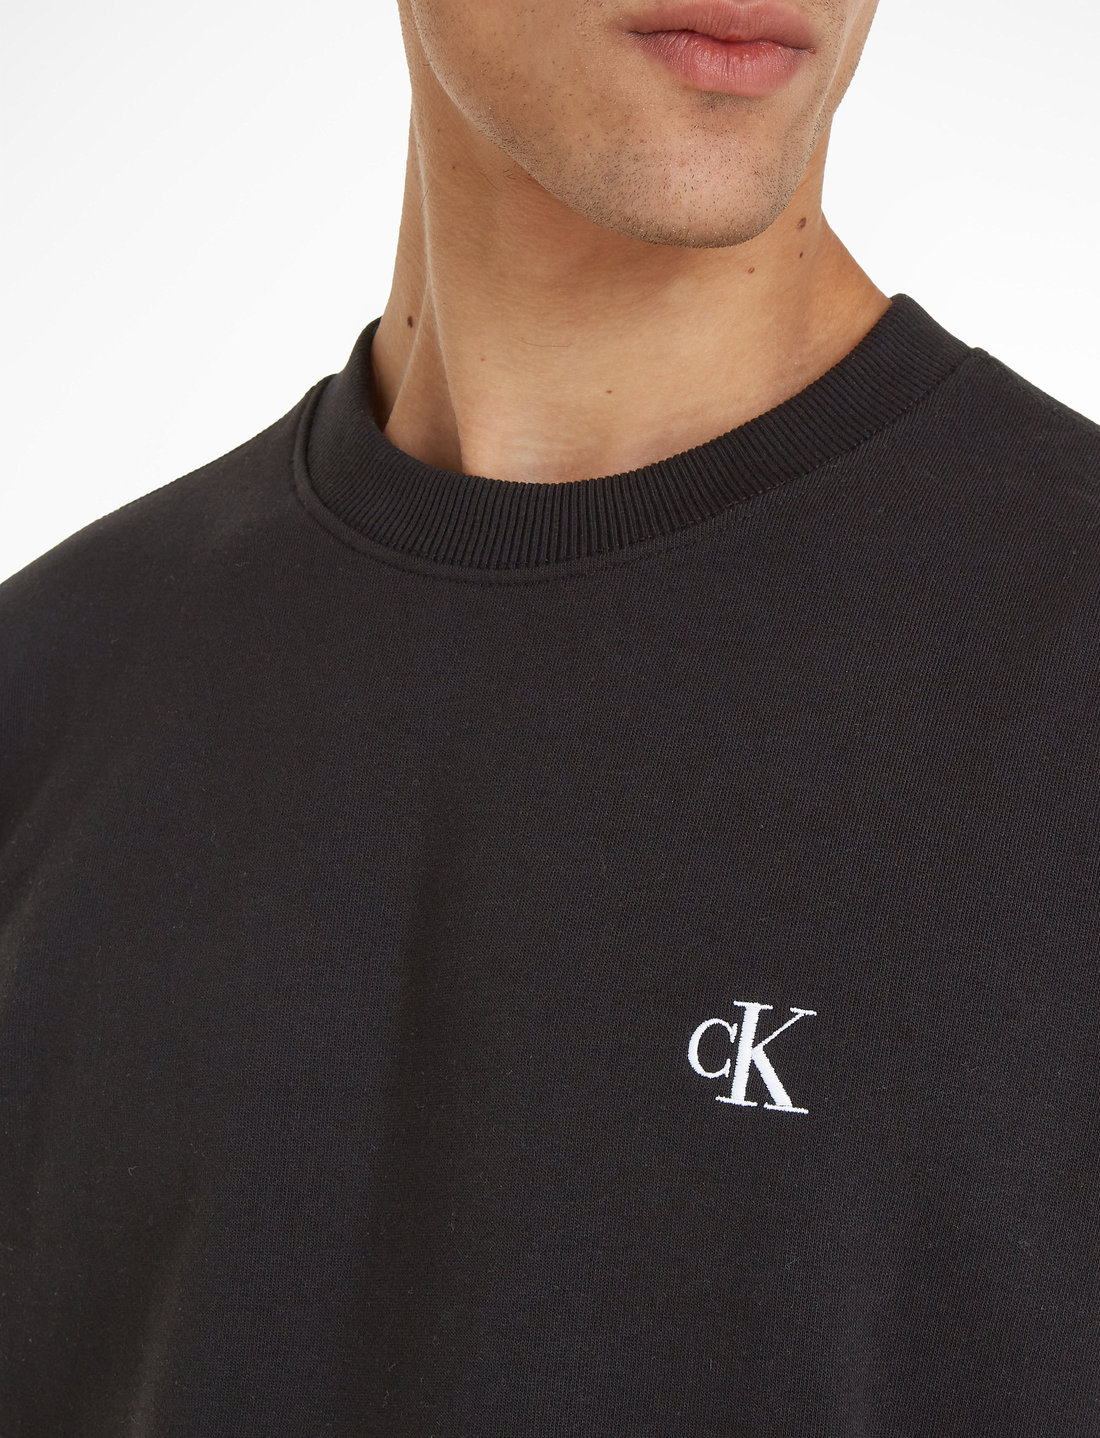 Calvin Klein Jeans Ck Essential Reg Cn - Sweatshirts